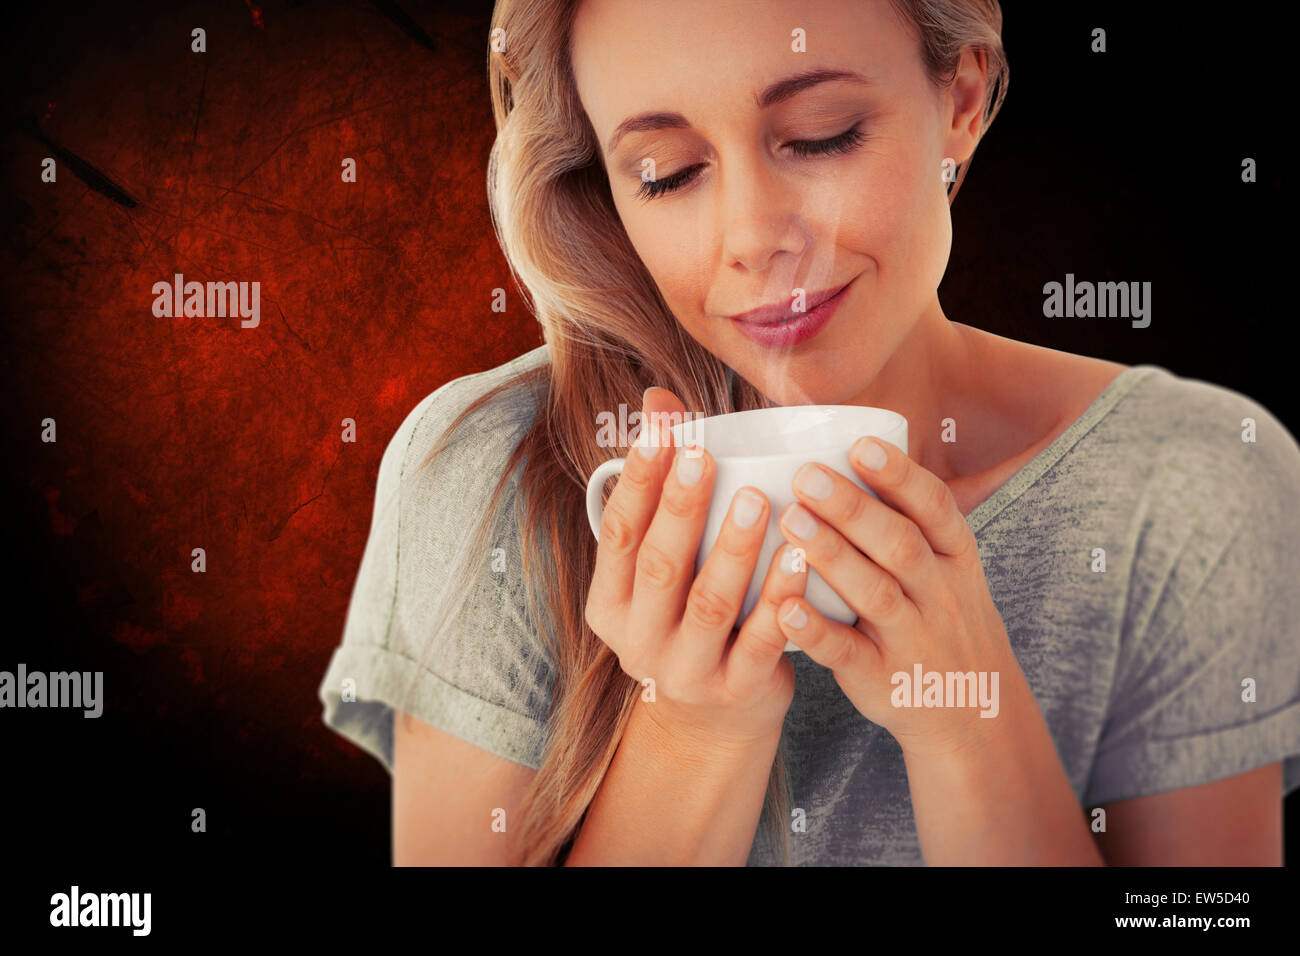 Immagine composita della bionda sorridente con bevanda calda rilassante Foto Stock